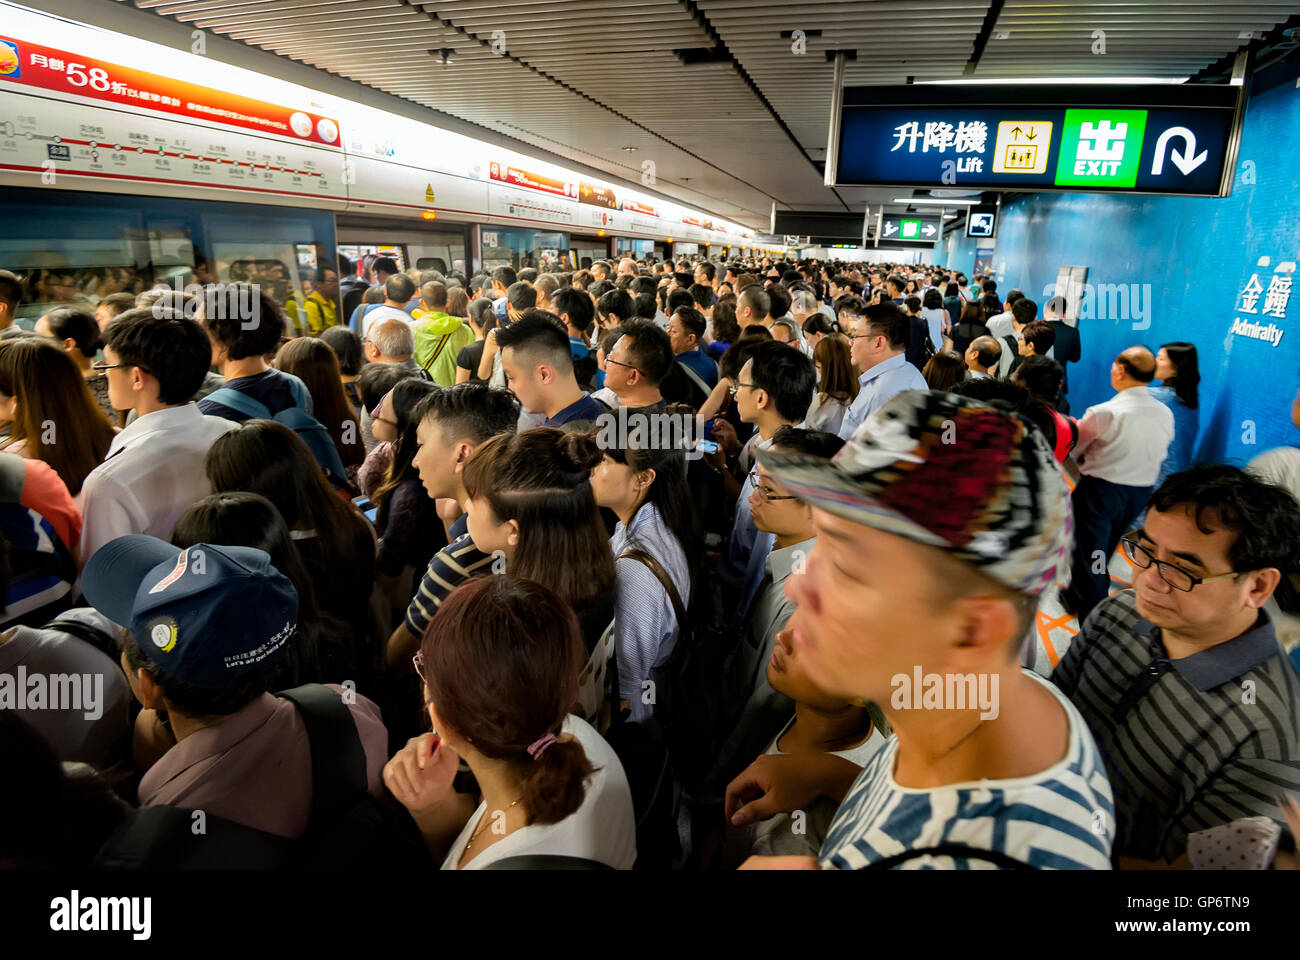 The Hong Kong MTR subway at rush hour, Hong Kong, China Stock Photo